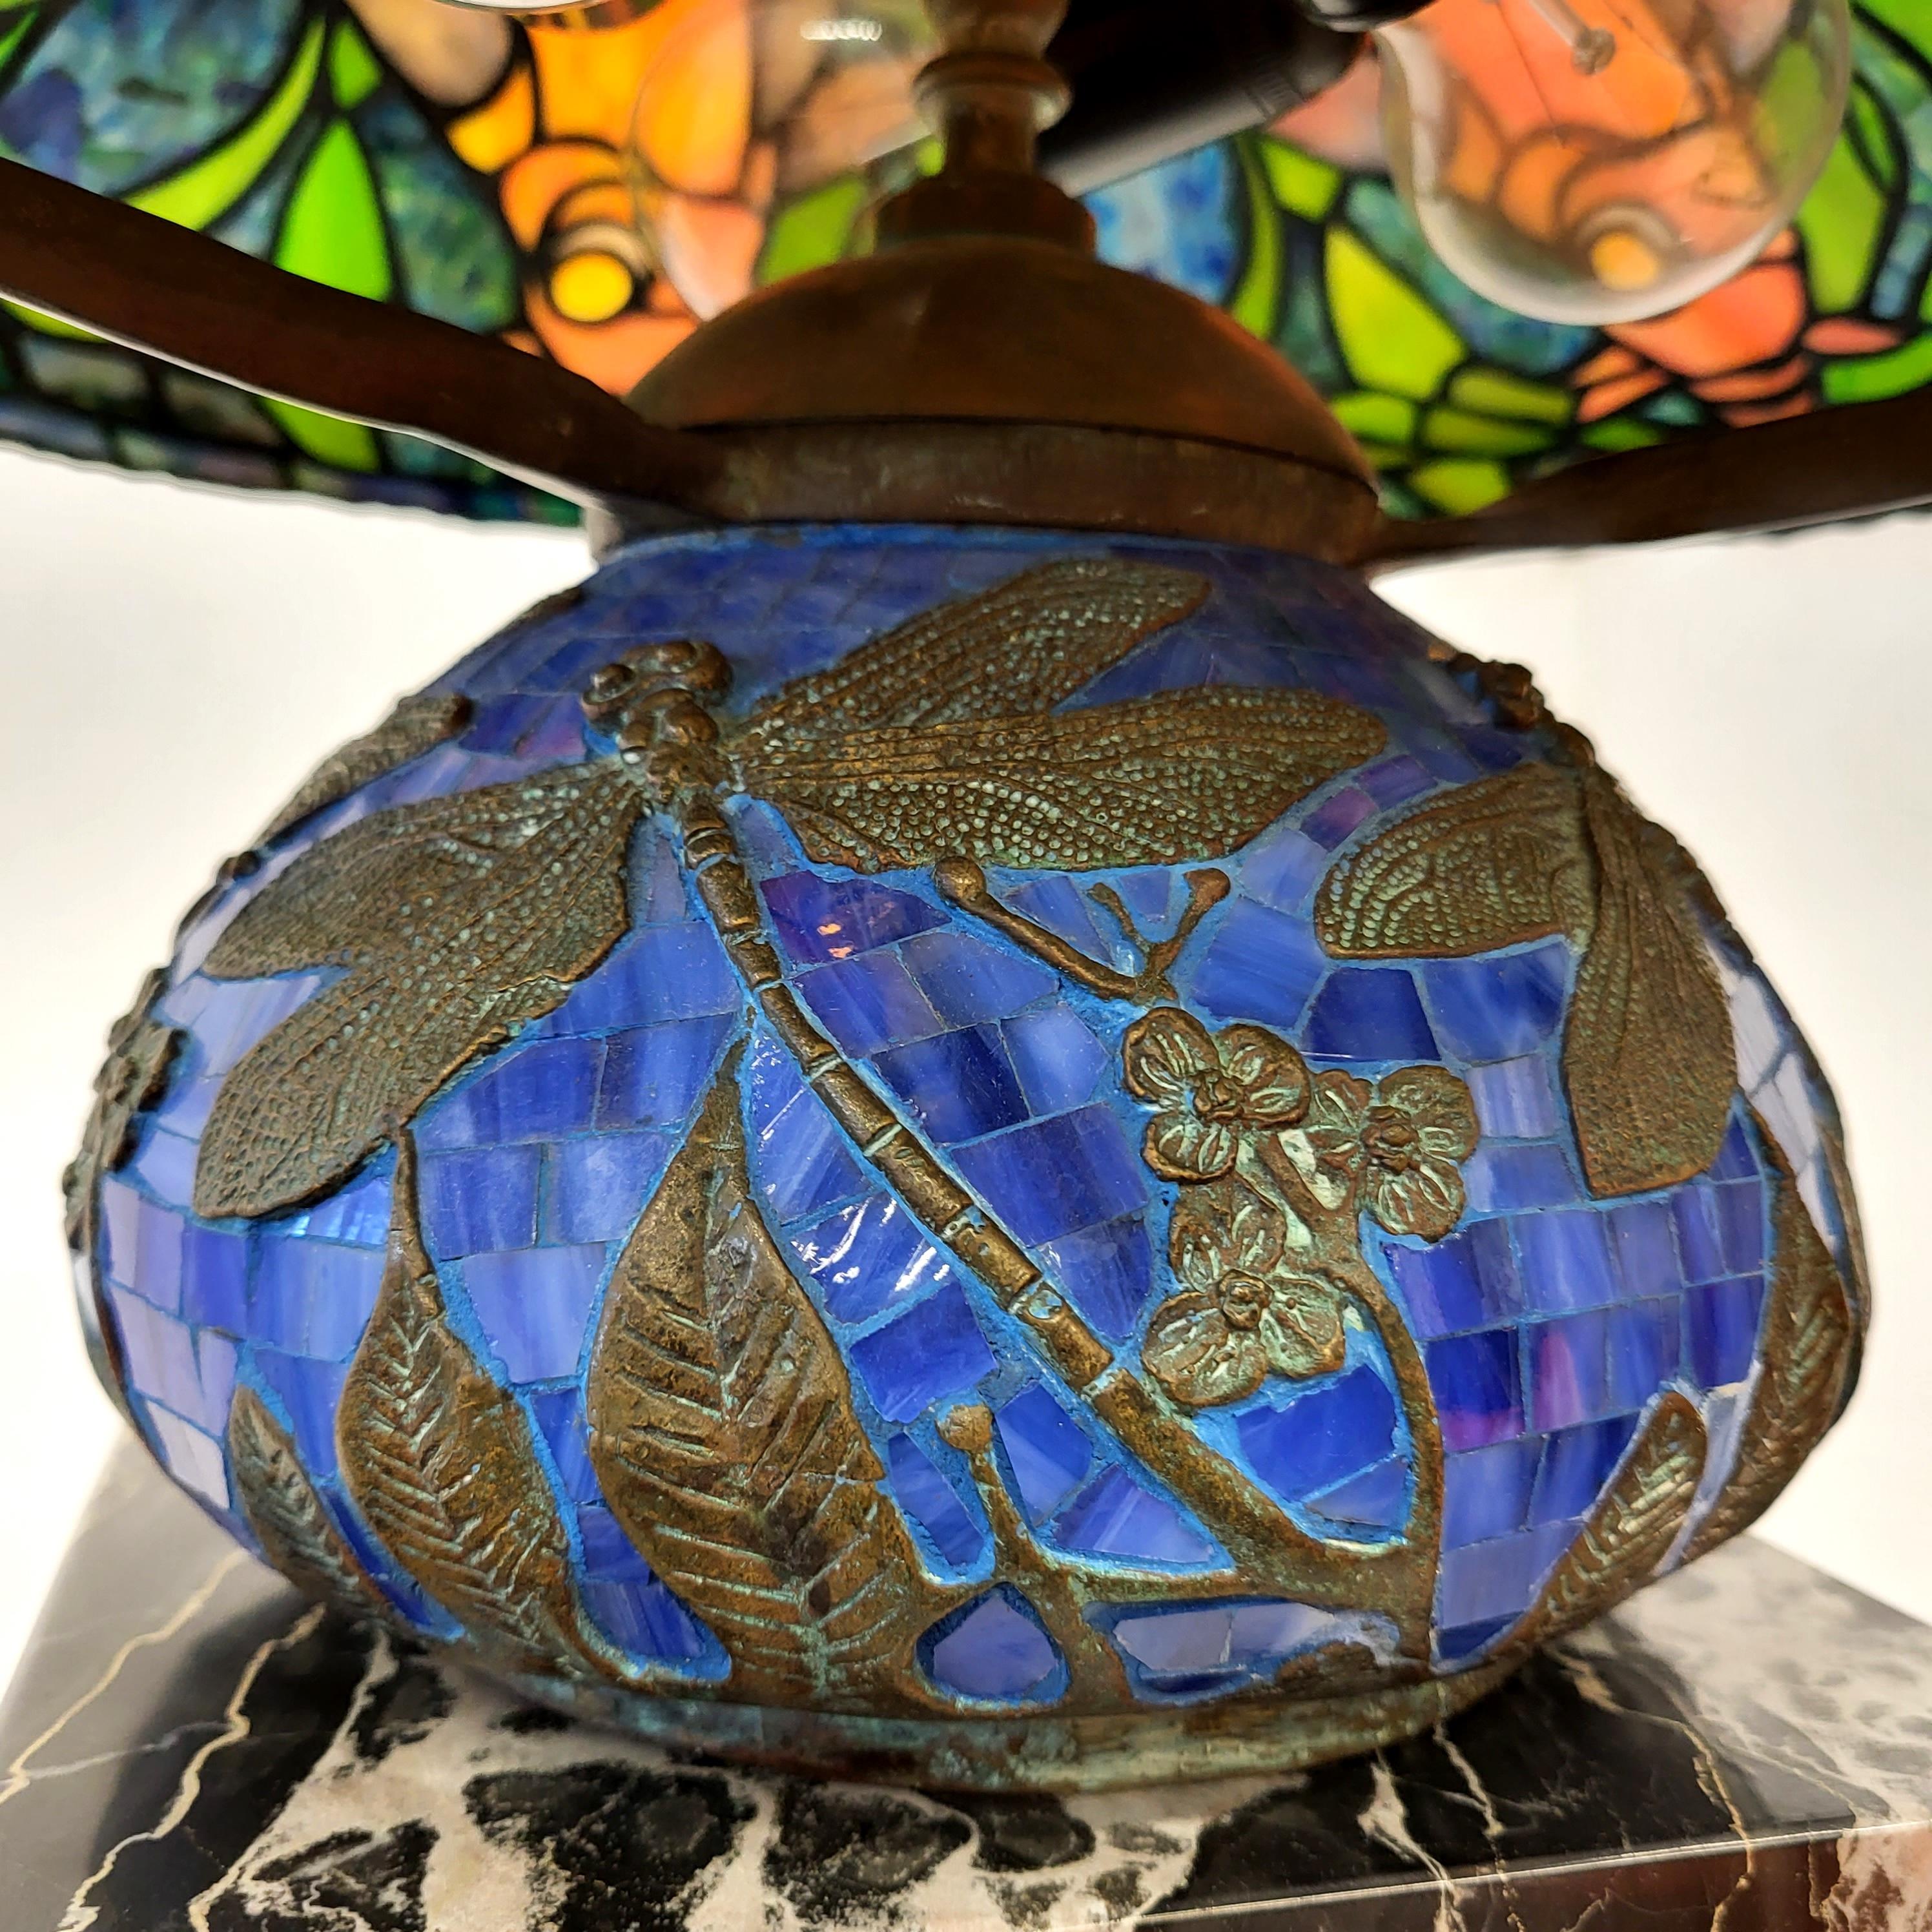 Atemberaubende und erstaunliche Tischlampe in der Art der Tiffany Studios. 
Sehr beeindruckende handgefertigte Lampe mit einem wunderschönen blauen Libellensockel.
 
Sehr schöne Handarbeit, buntes Glas. Nach dem Vorbild der Dragonfly-Lampe.

Die